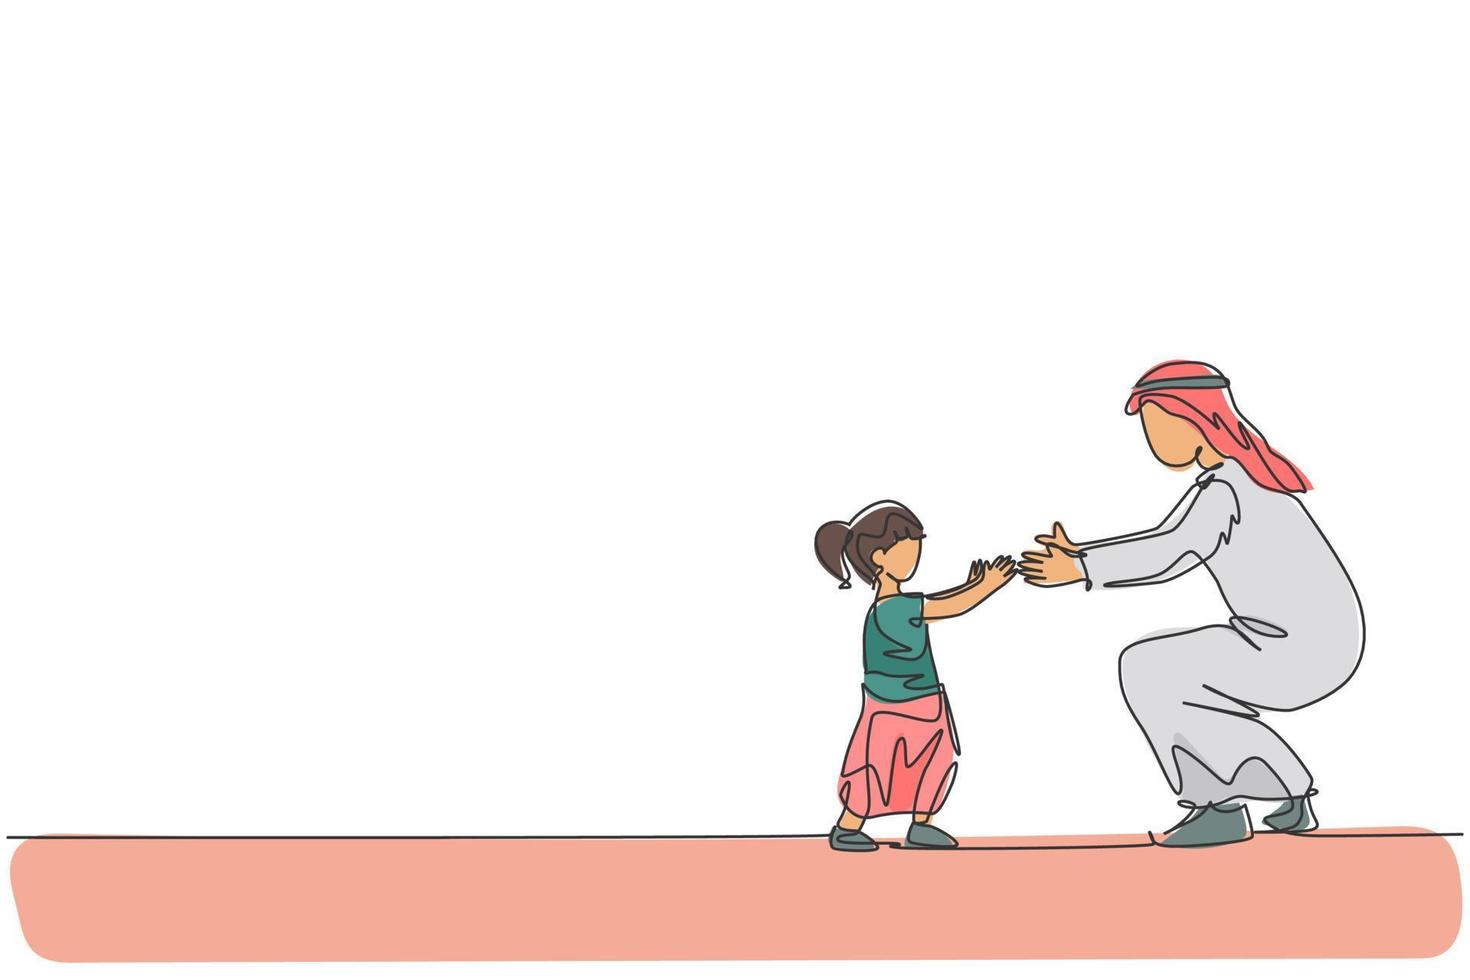 único desenho de linha contínua do jovem pai árabe ensina como andar para a criança de sua filha em casa. conceito de paternidade de família feliz muçulmana islâmica. ilustração em vetor desenho desenho de uma linha na moda